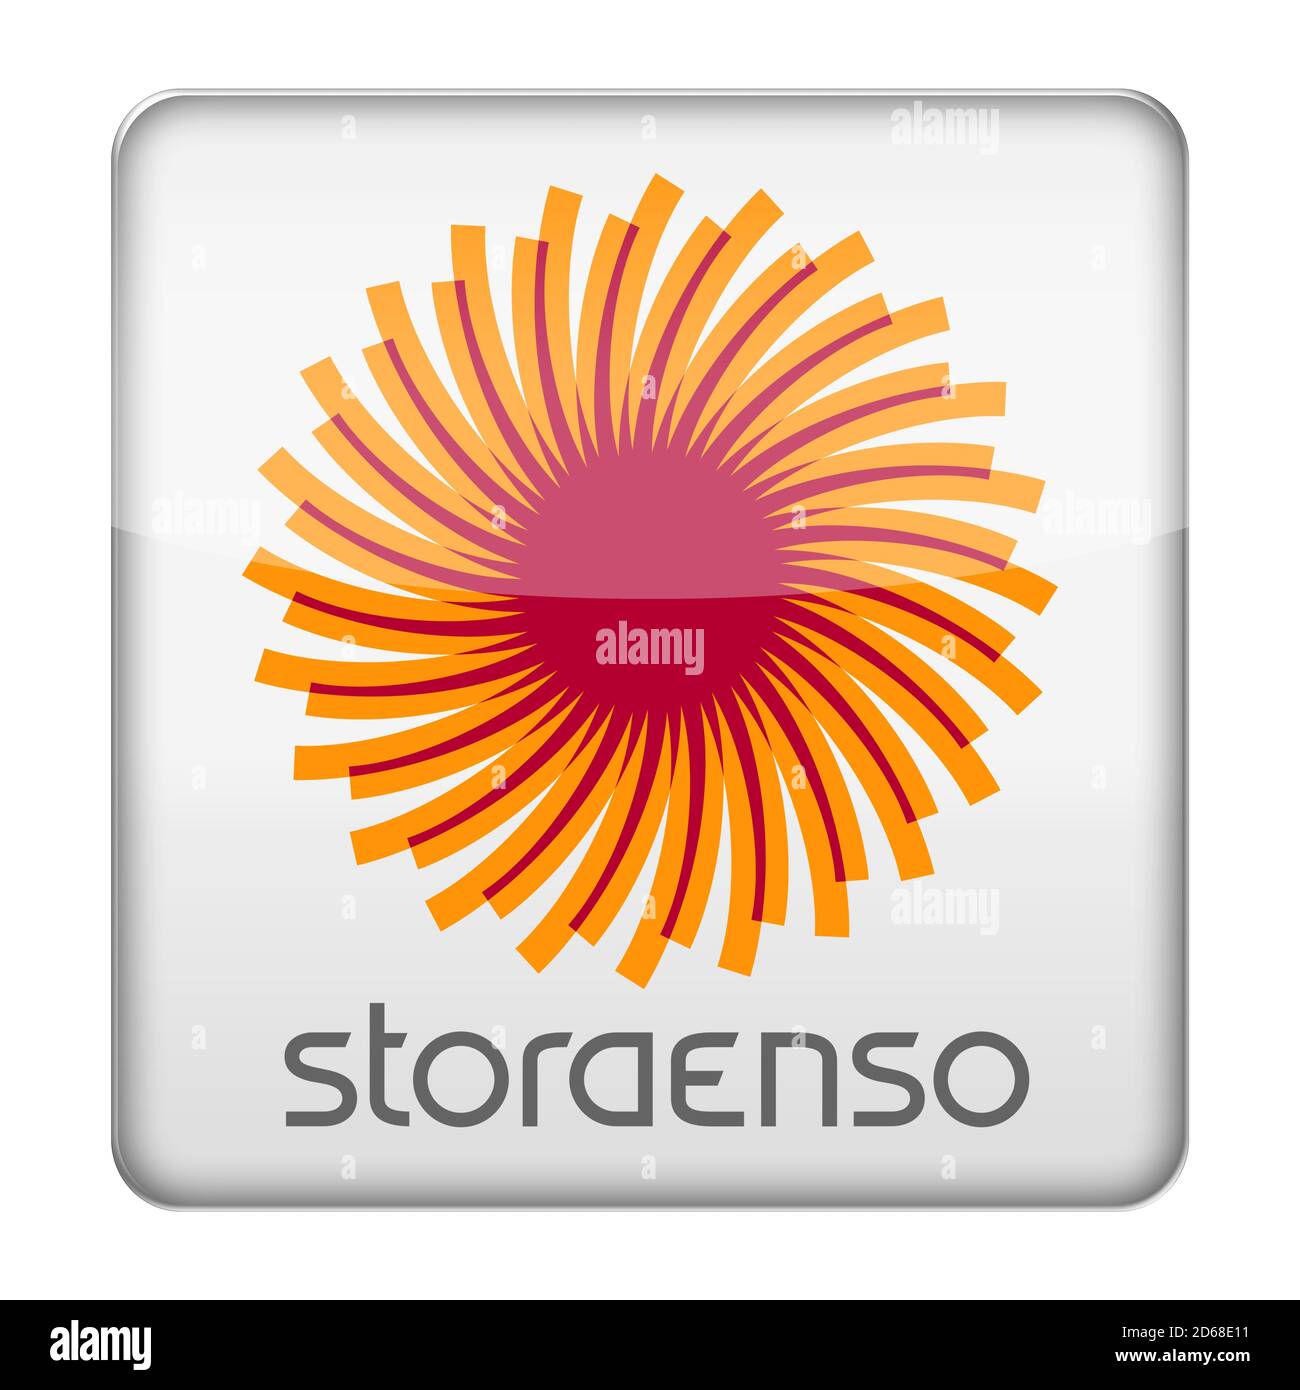 Stora Enso logo Stock Photo